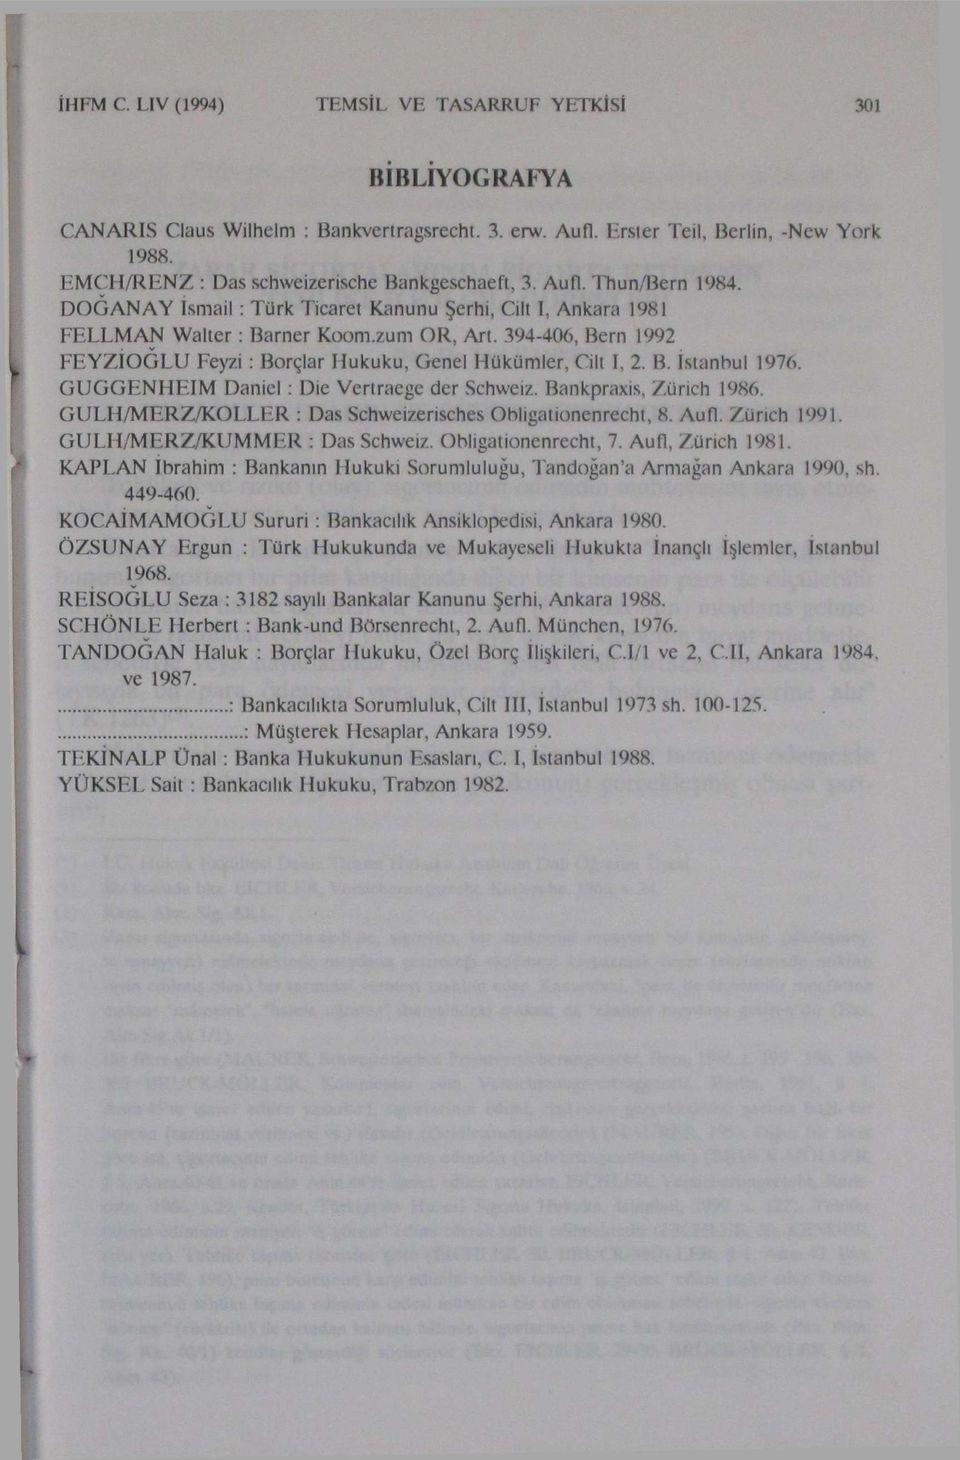 394-406, Bern 1992 FEYZIOGLU Feyzi: Borçlar Hukuku, Genel Hükümler, Cilt I, 2. B. İstanbul 1976. GUGGENHEIM Daniel : Die Vertraege der Schweiz. Bankpraxis, Zürich 1986.